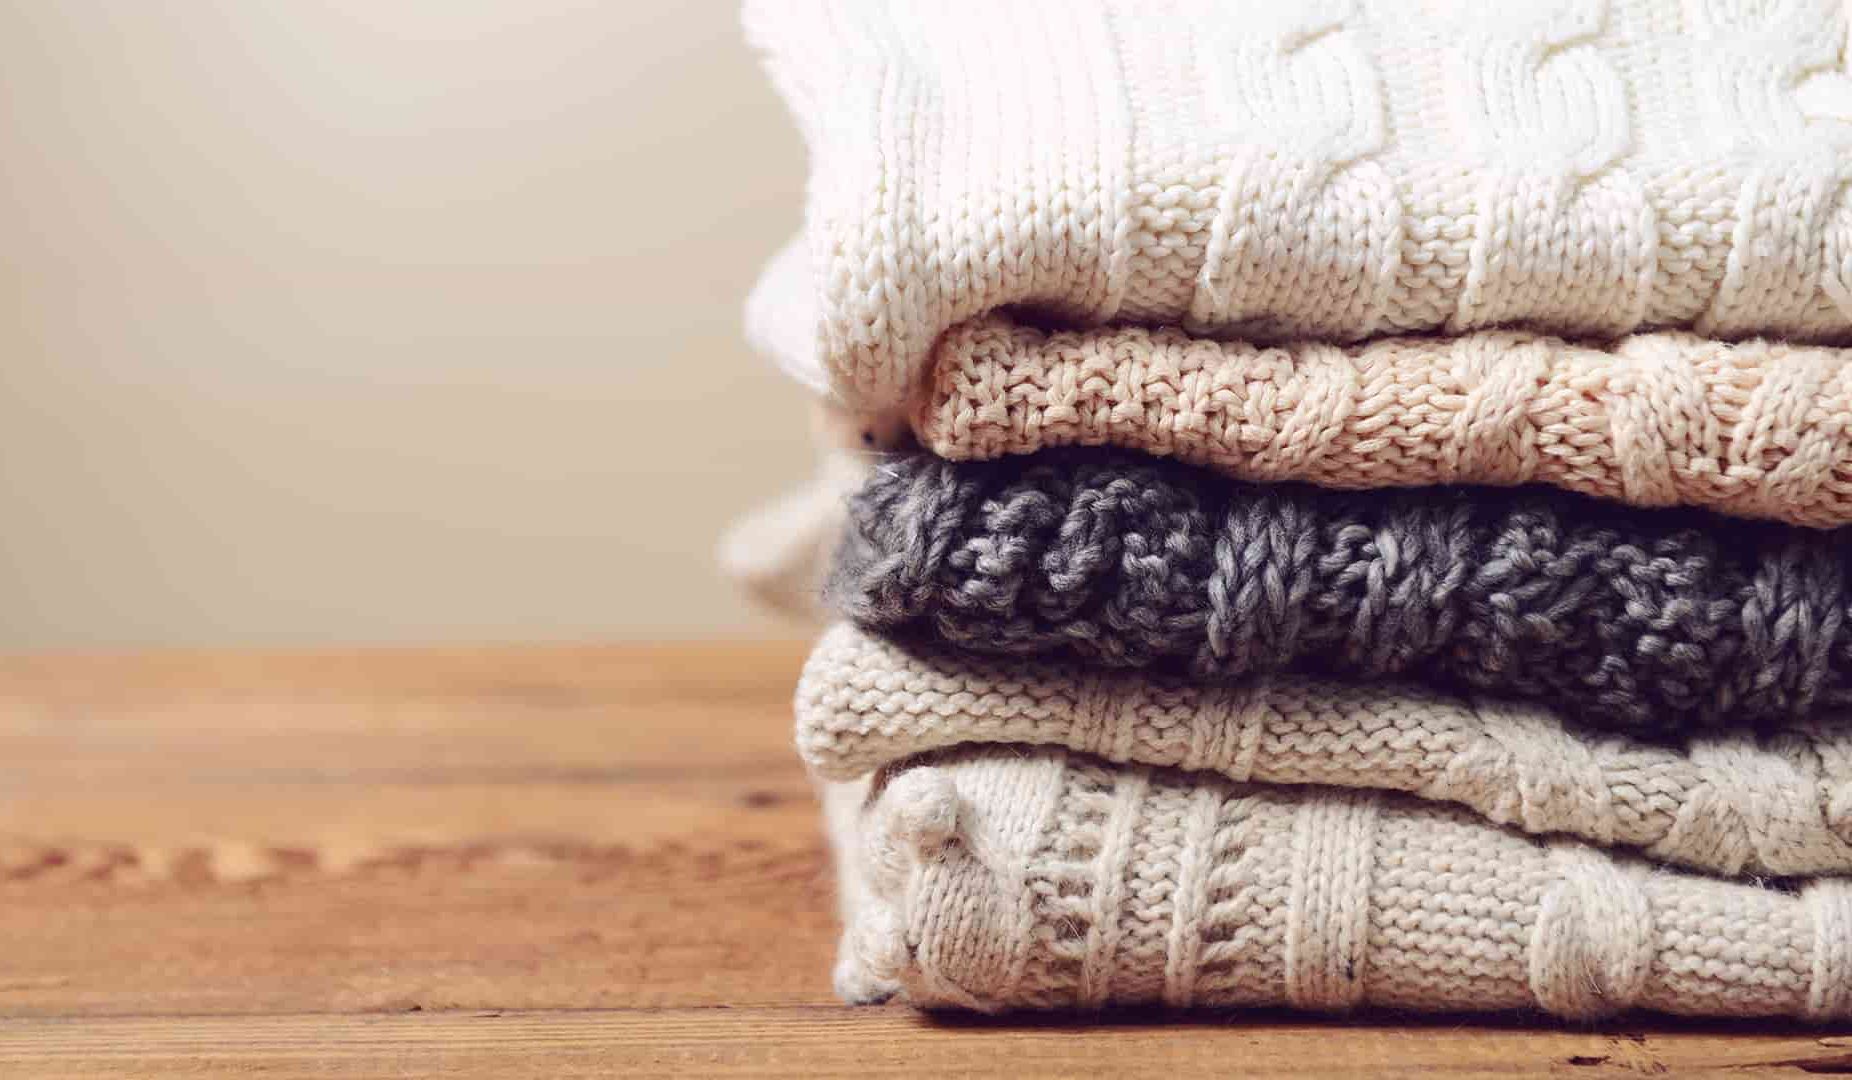  سعر قماش الصوف ابيض واستخداماتها المتنوعة للالبسة الشتوية 